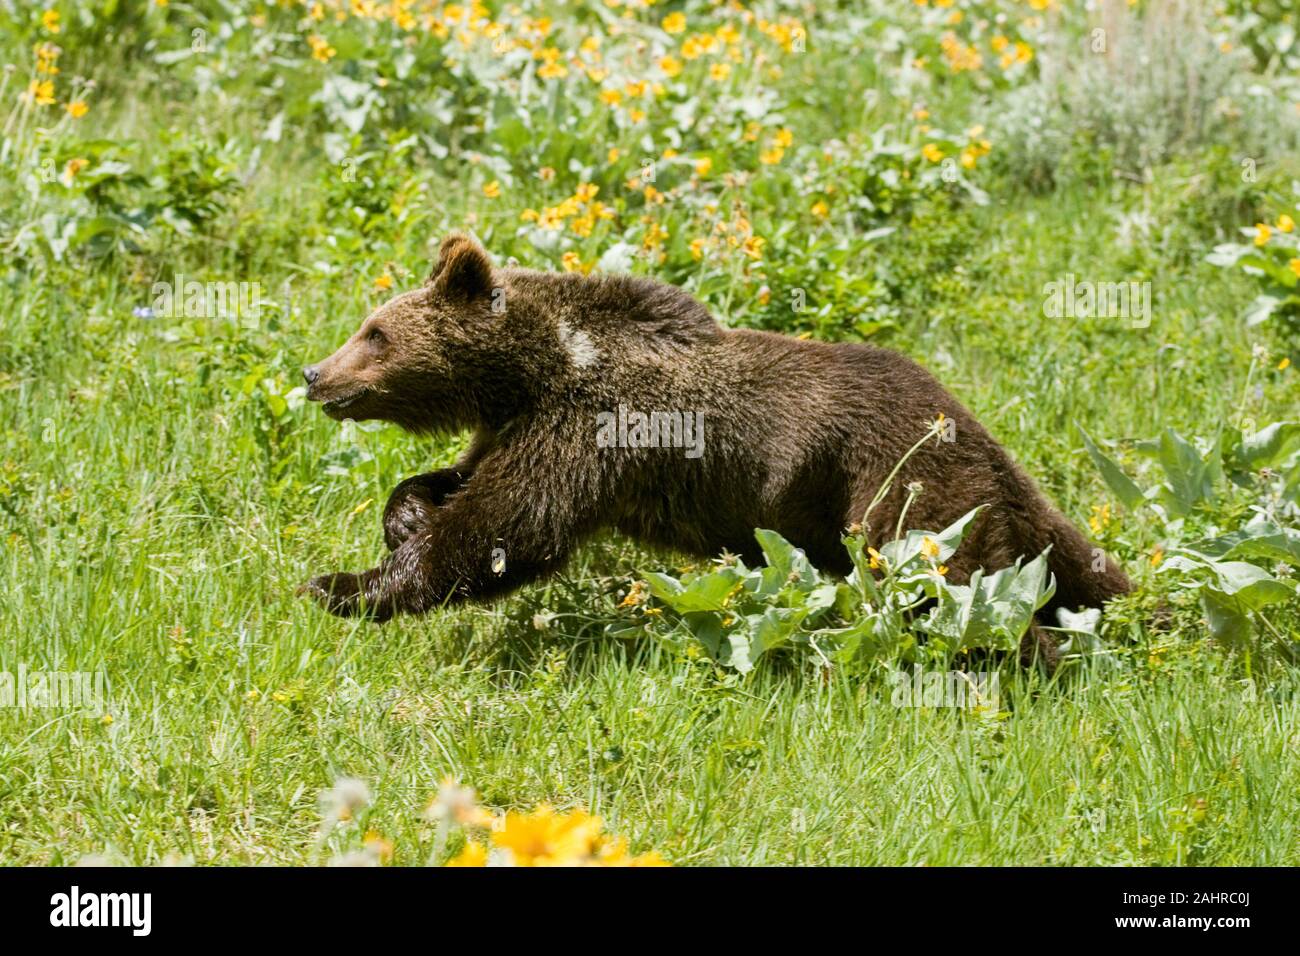 Grizzly ou ours brun (ursus arctos) 1,5 ans cub à travers le domaine de la balsamorhize à feuilles de flèche (Balsamorhiza sagittata) fleurs sauvages. Bozema Banque D'Images